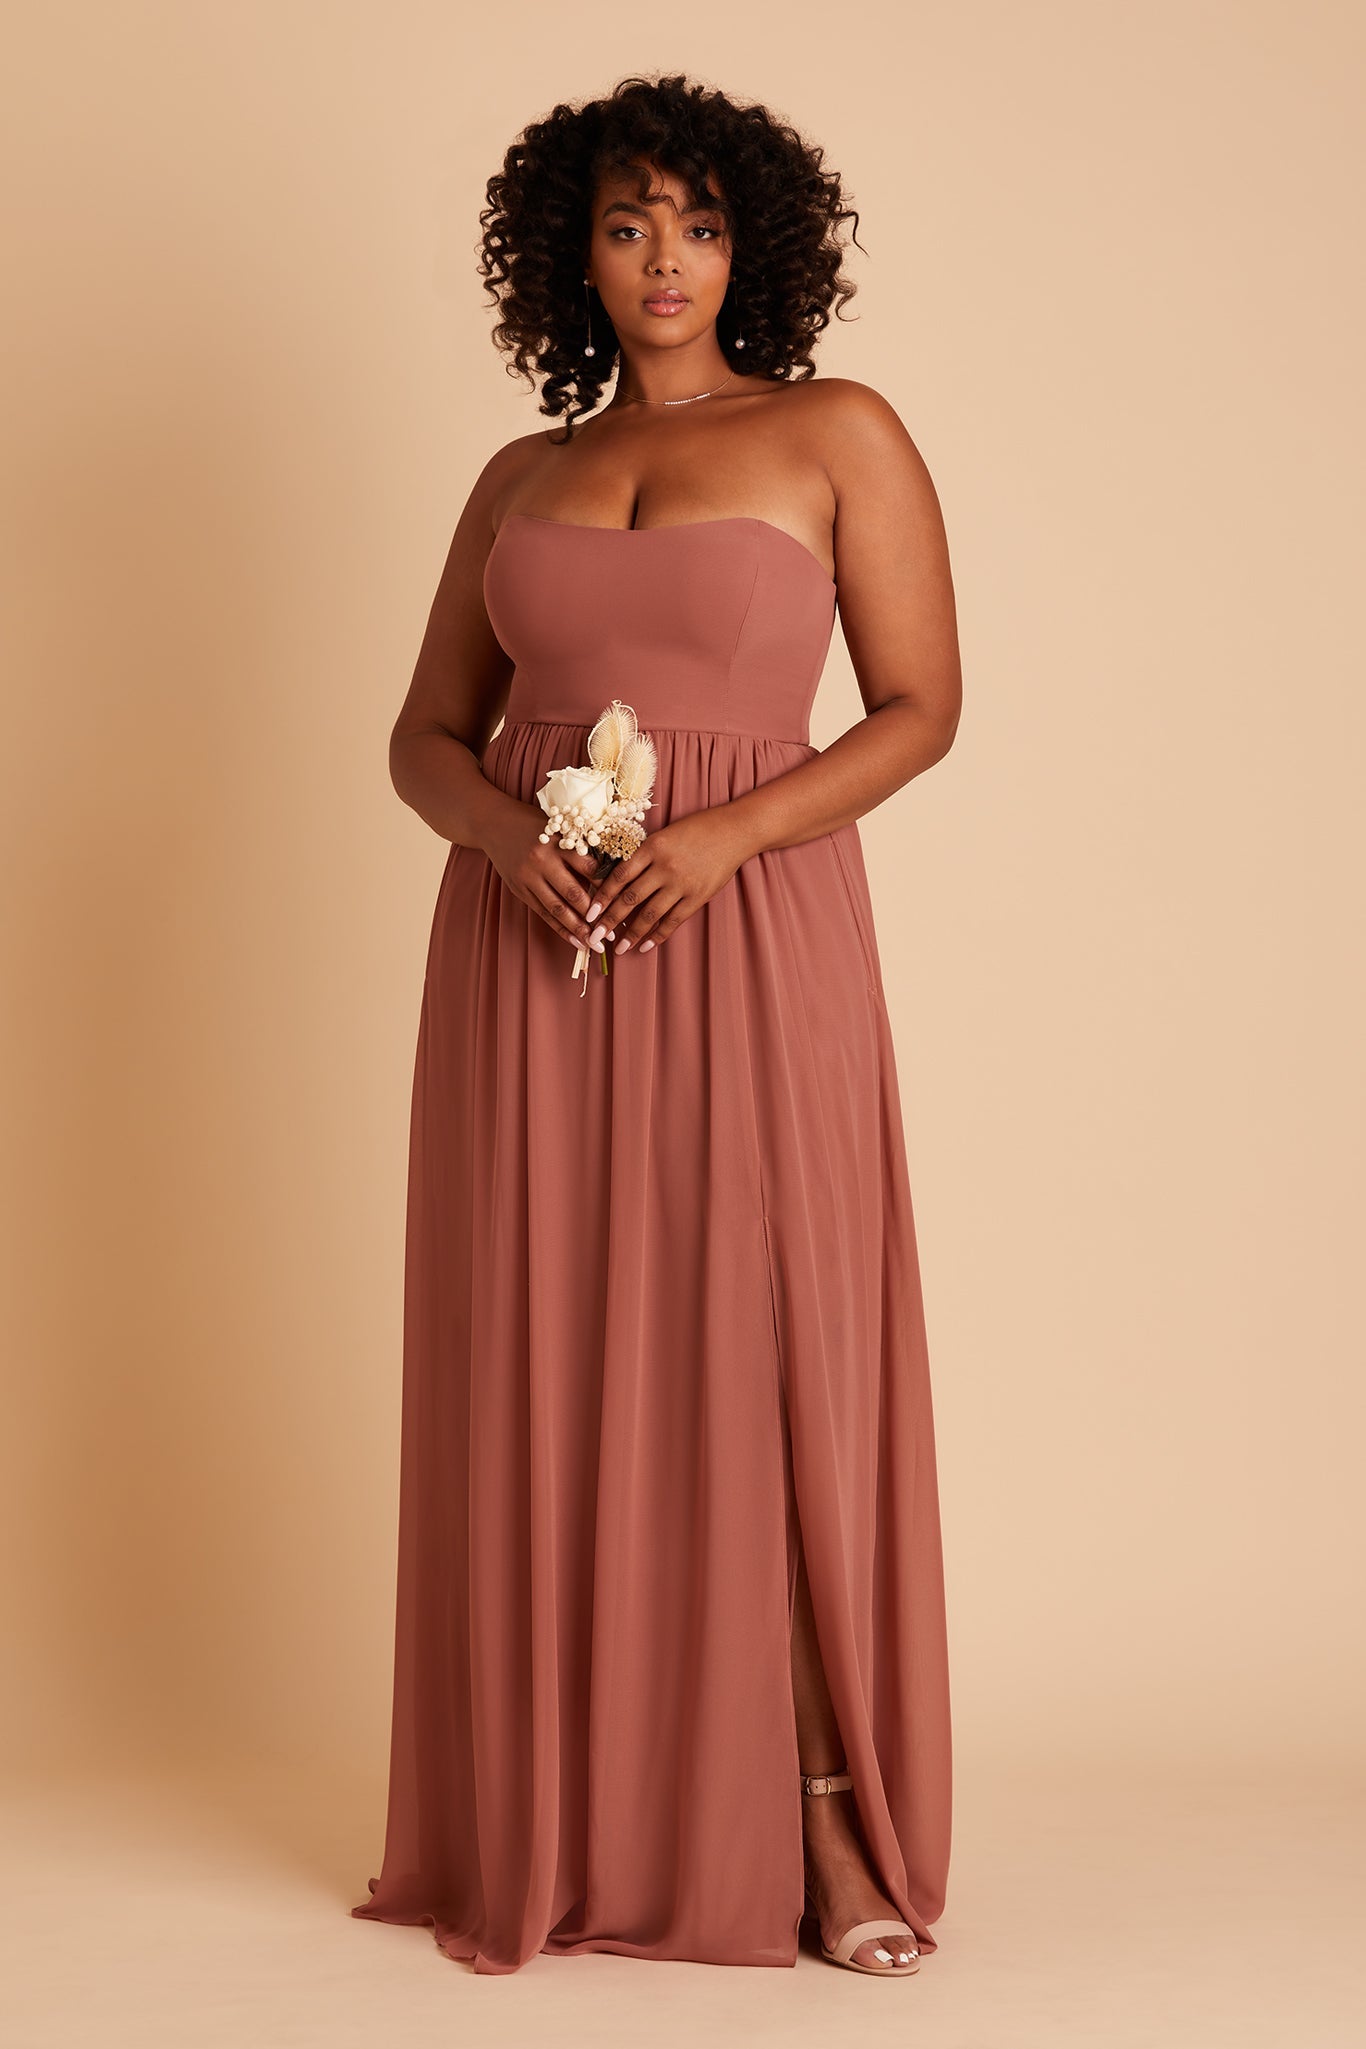 August Convertible Dress - Desert Rose